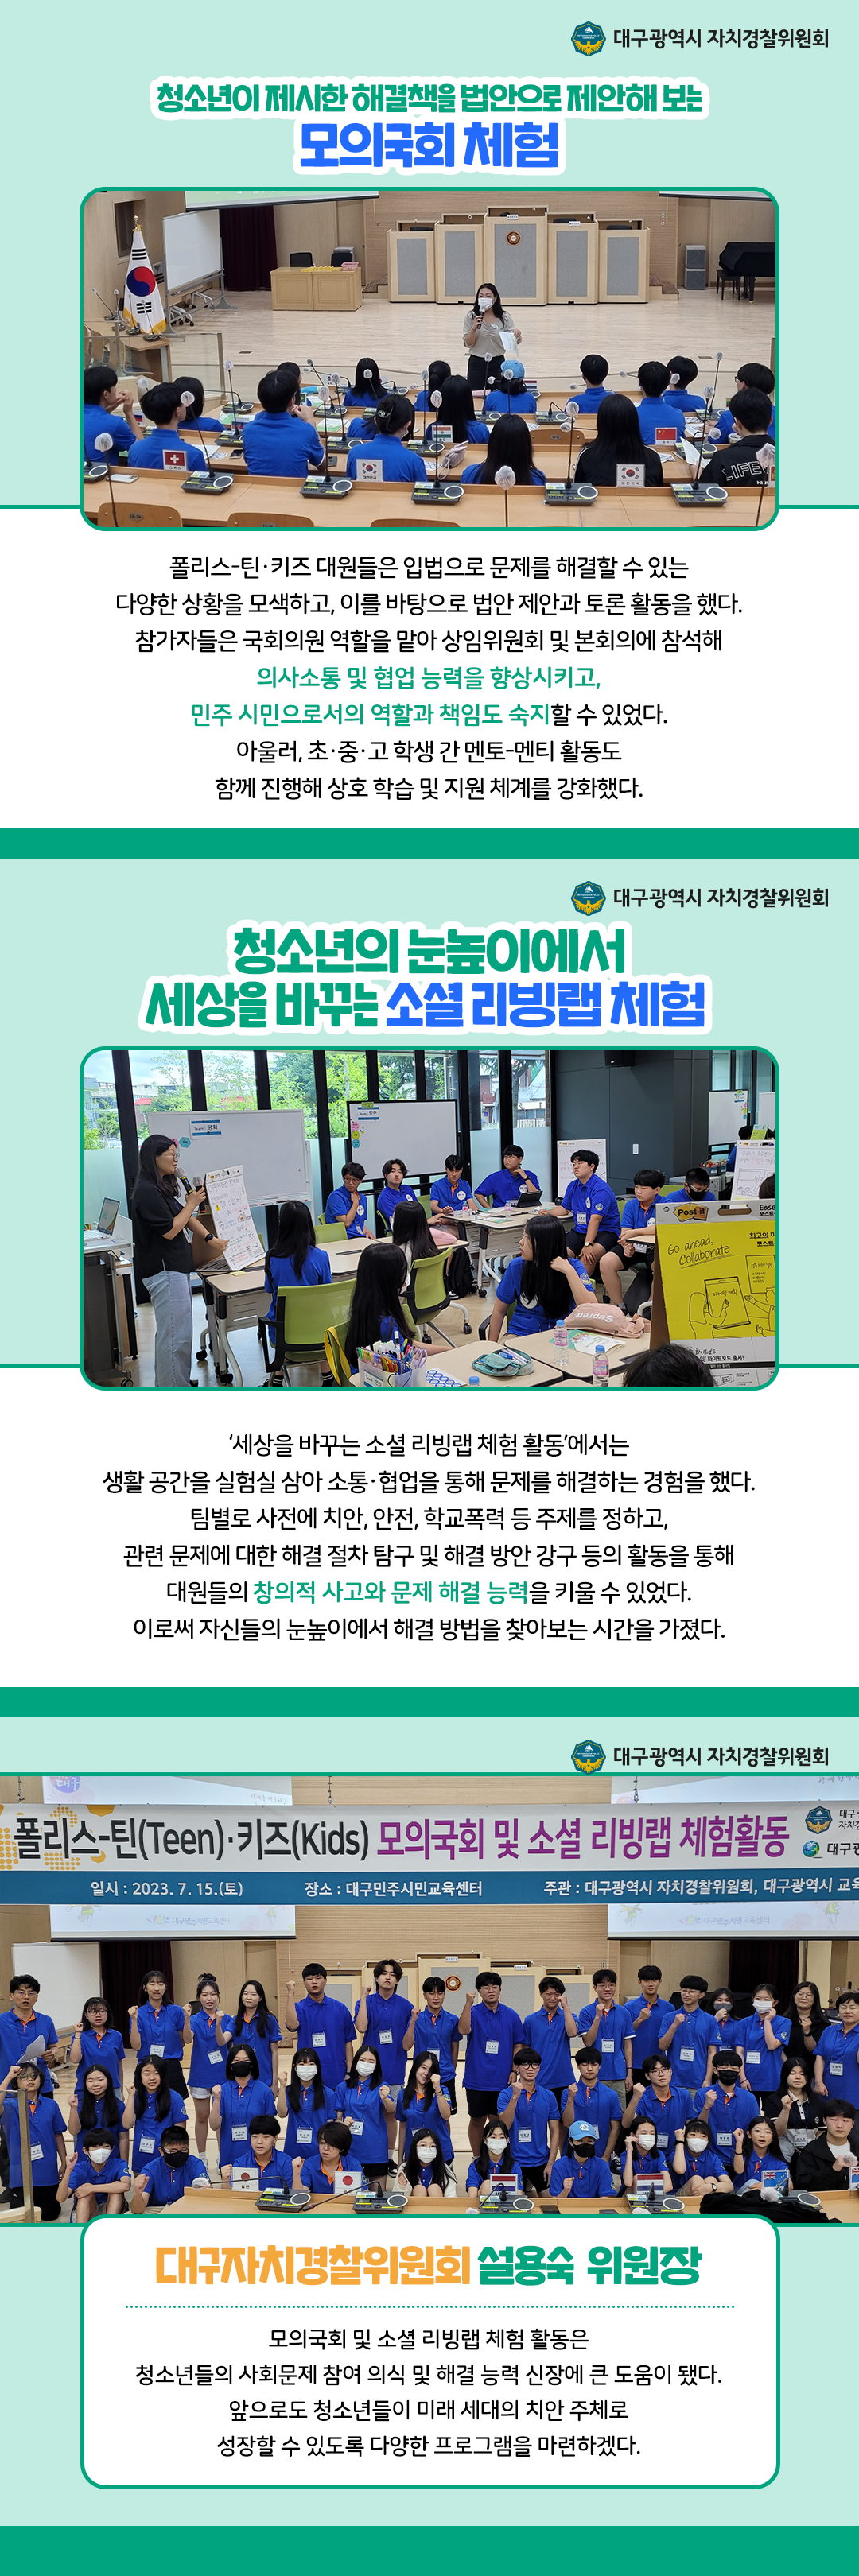 [카드뉴스] 폴리스-틴·키즈, 모의국회 및 소셜 리빙랩 체험 활동 개최 2